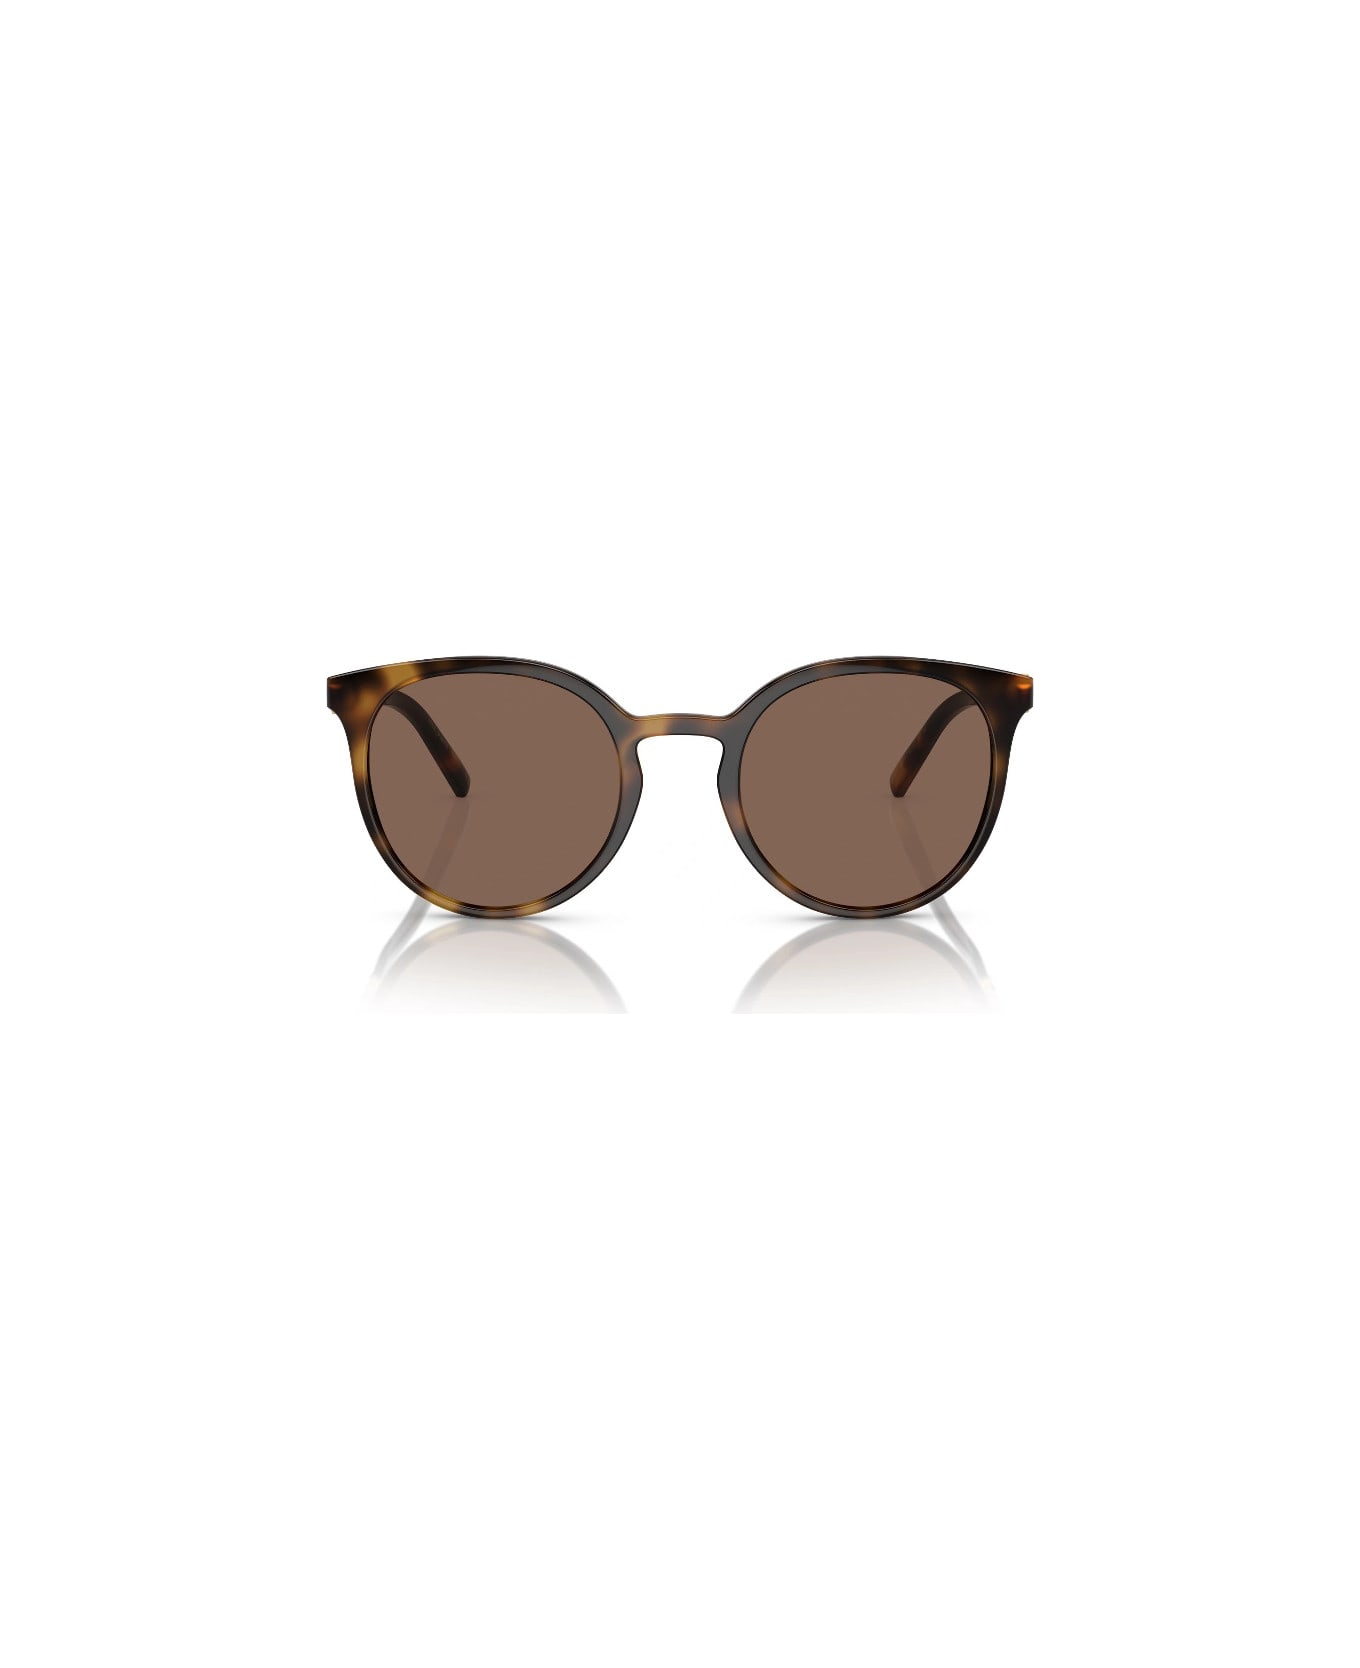 Dolce & Gabbana Eyewear DG6189 502/73 Sunglasses - Tartarugato サングラス